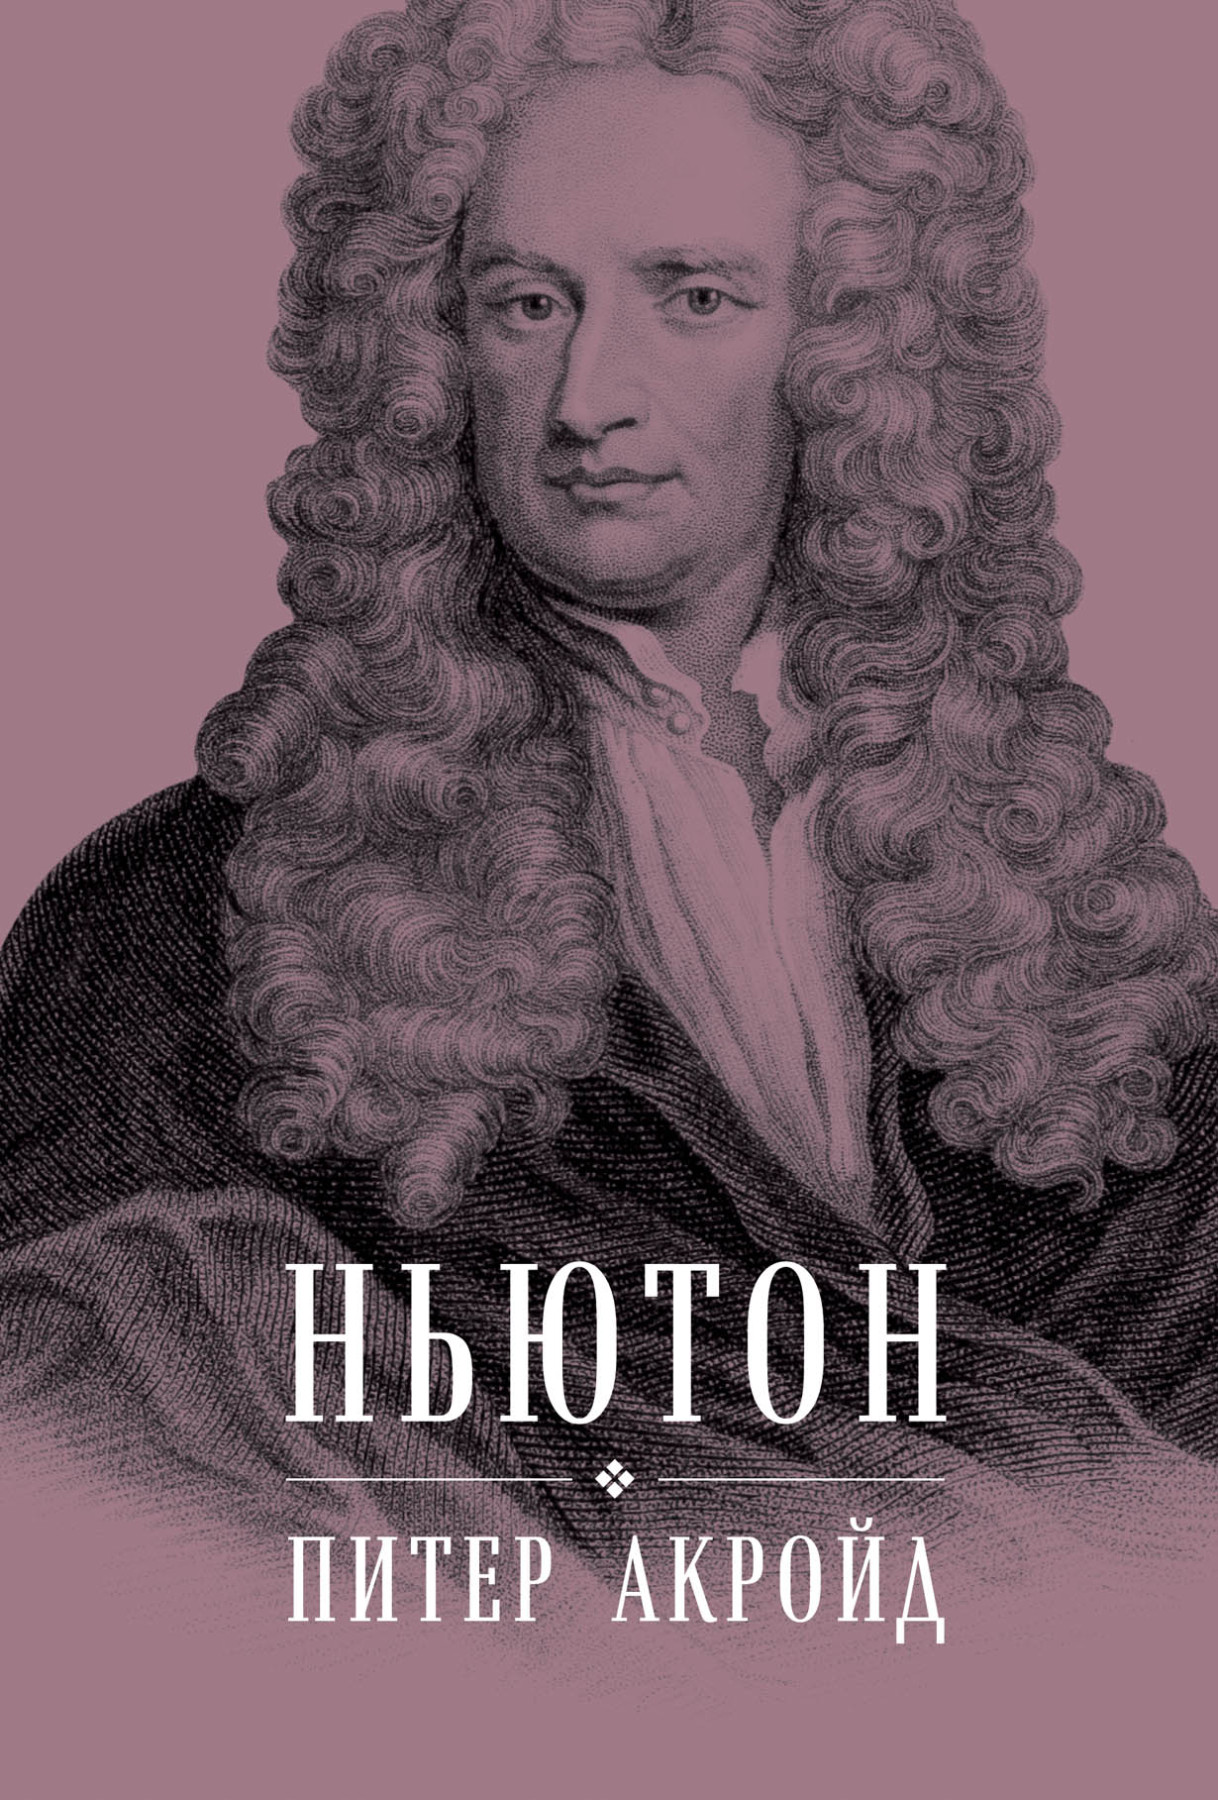 Ньютон обложка.